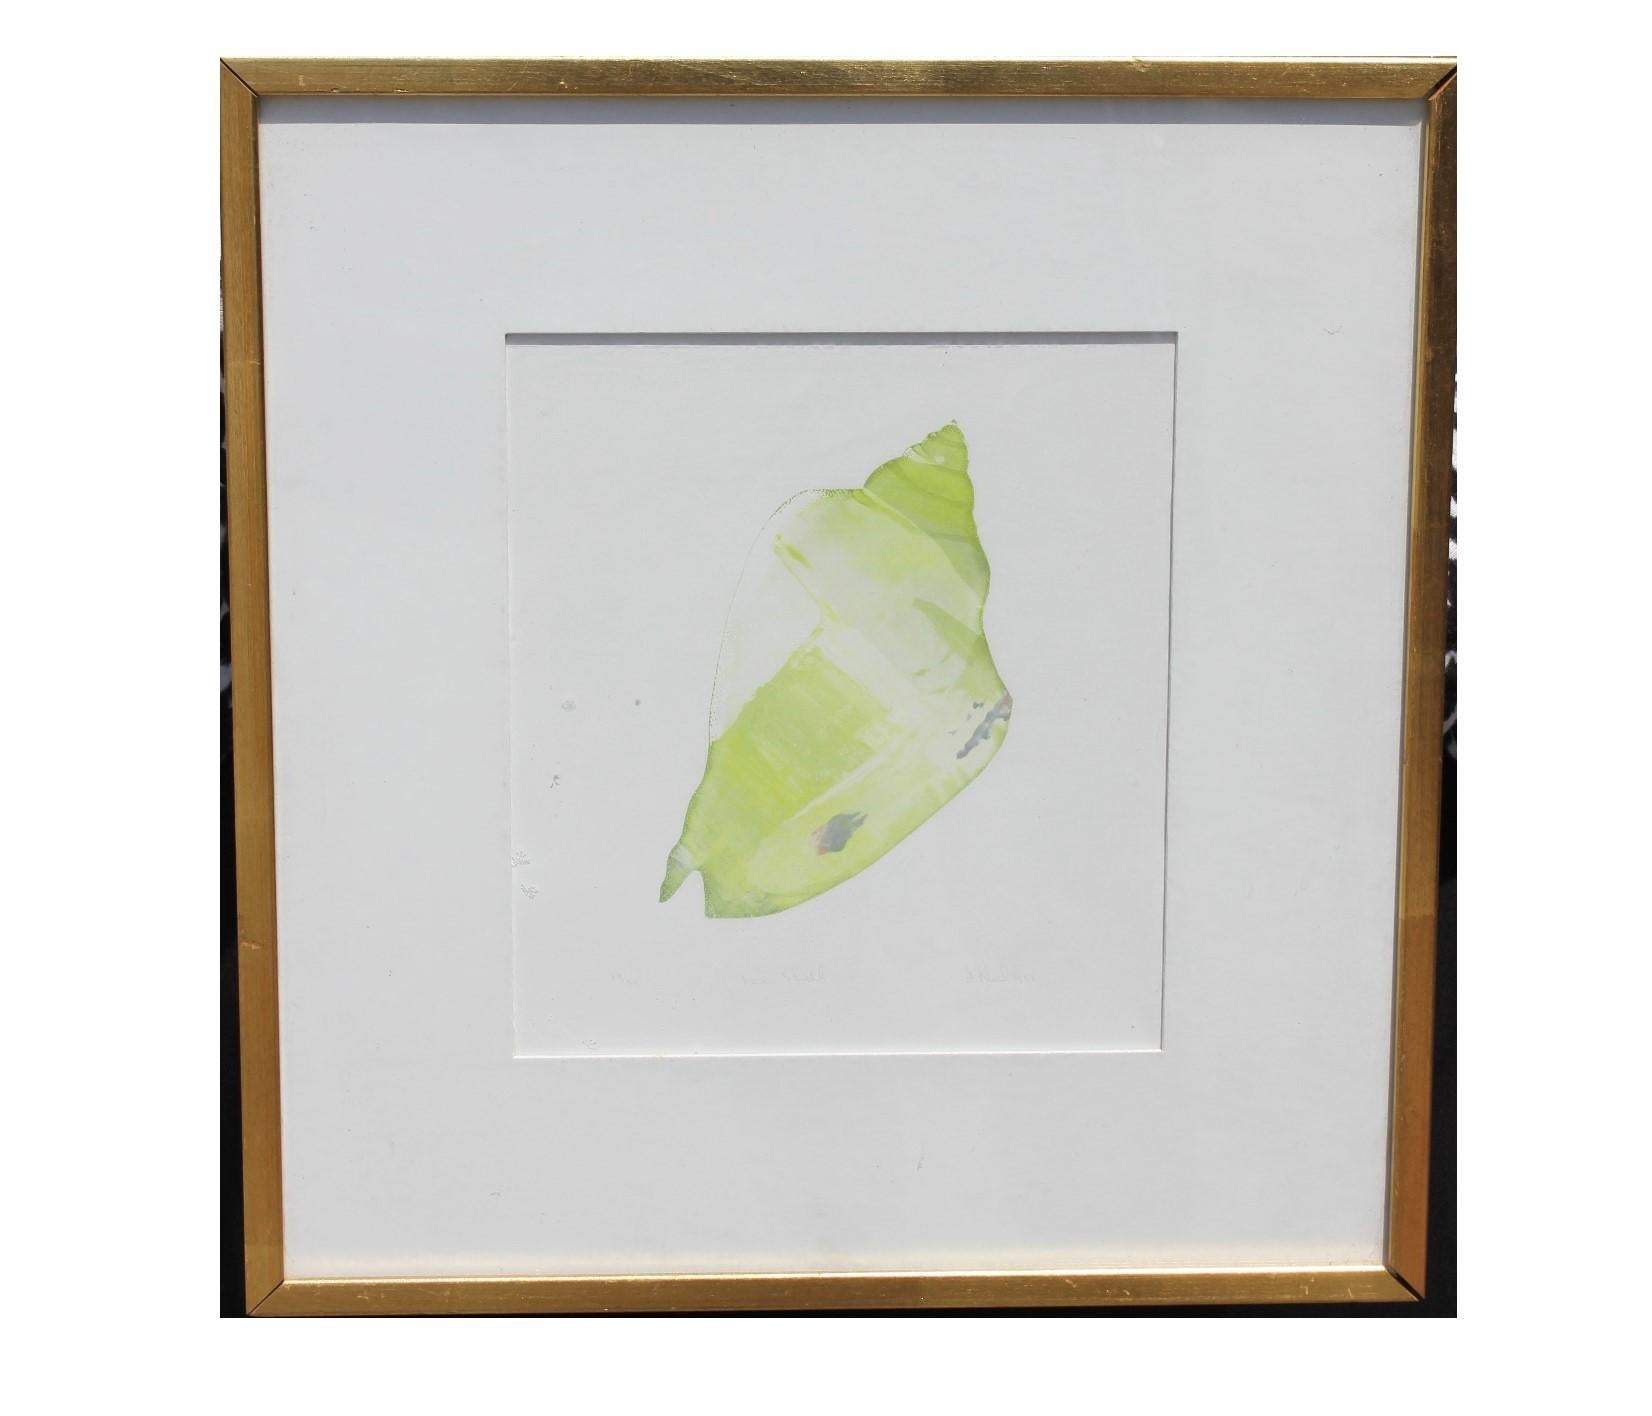 Lithographie en forme de coquillage peinte en vert Édition 33 sur 34